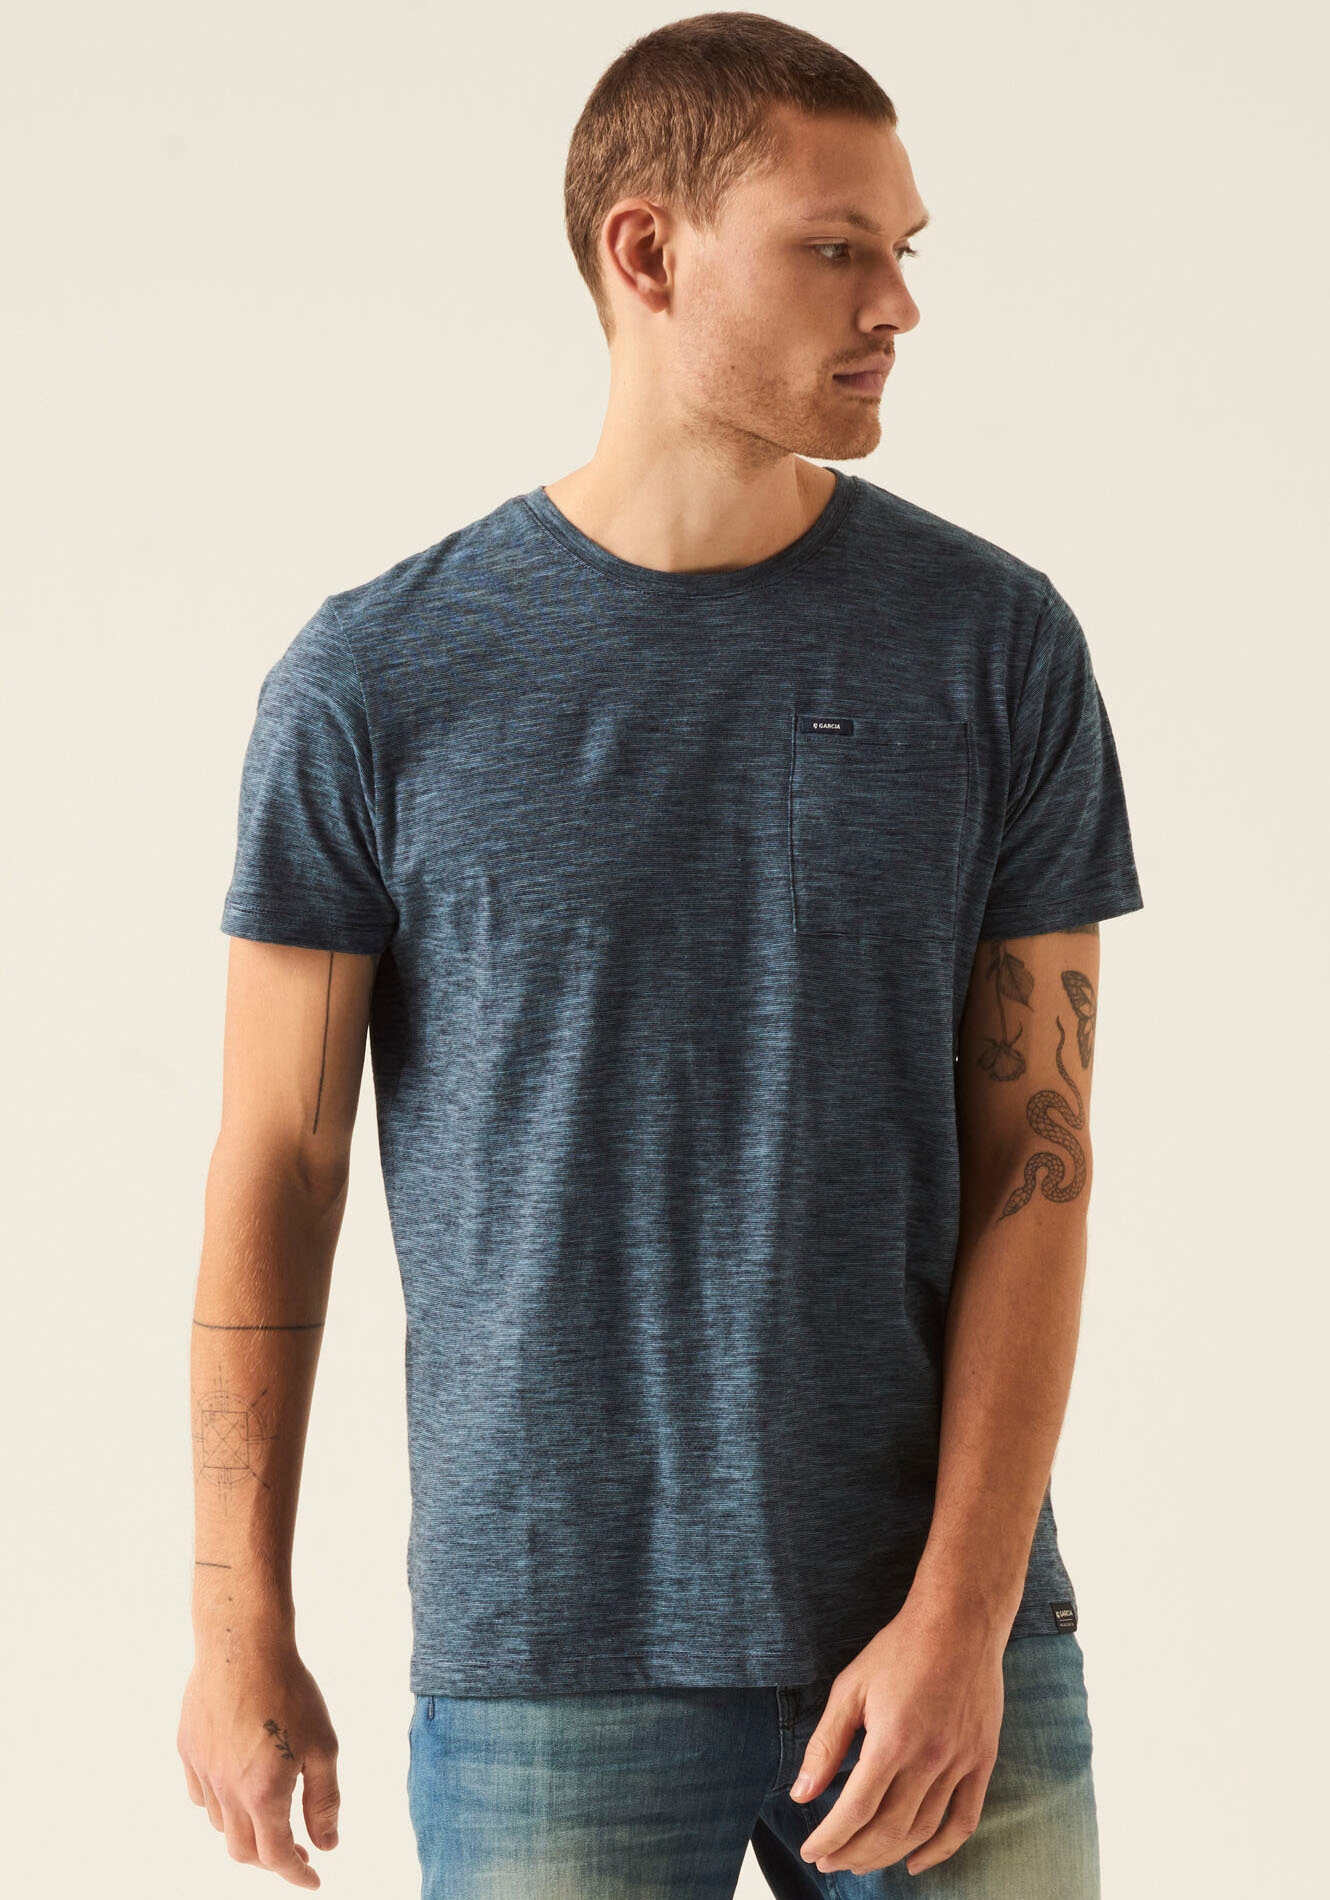 bestellen T-Shirts ➤ ohne Mindestbestellwert